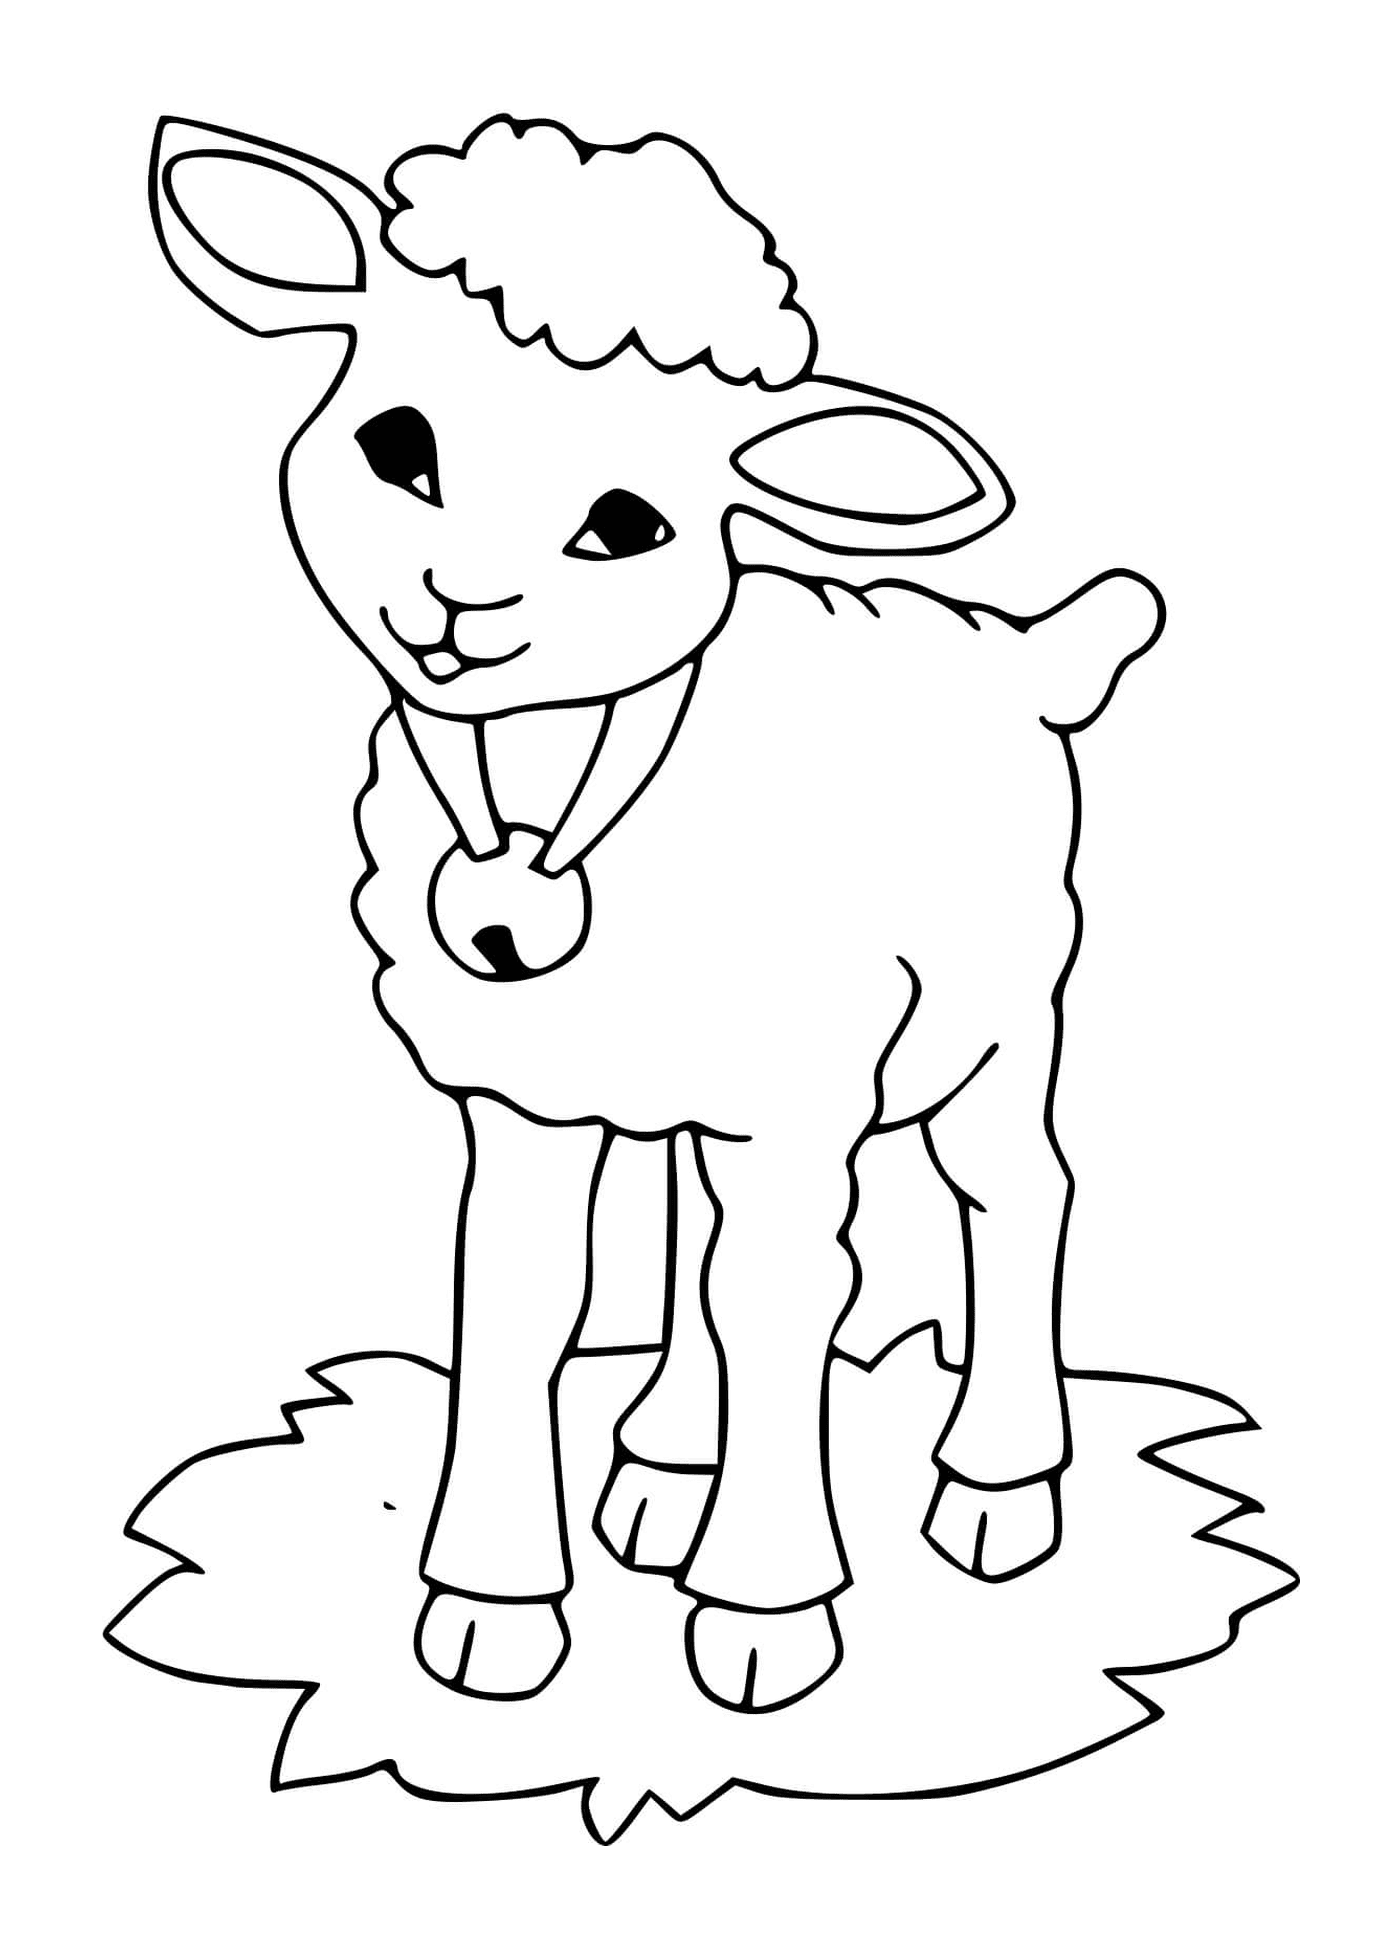  L'agnello indossa la campana piacevolmente 